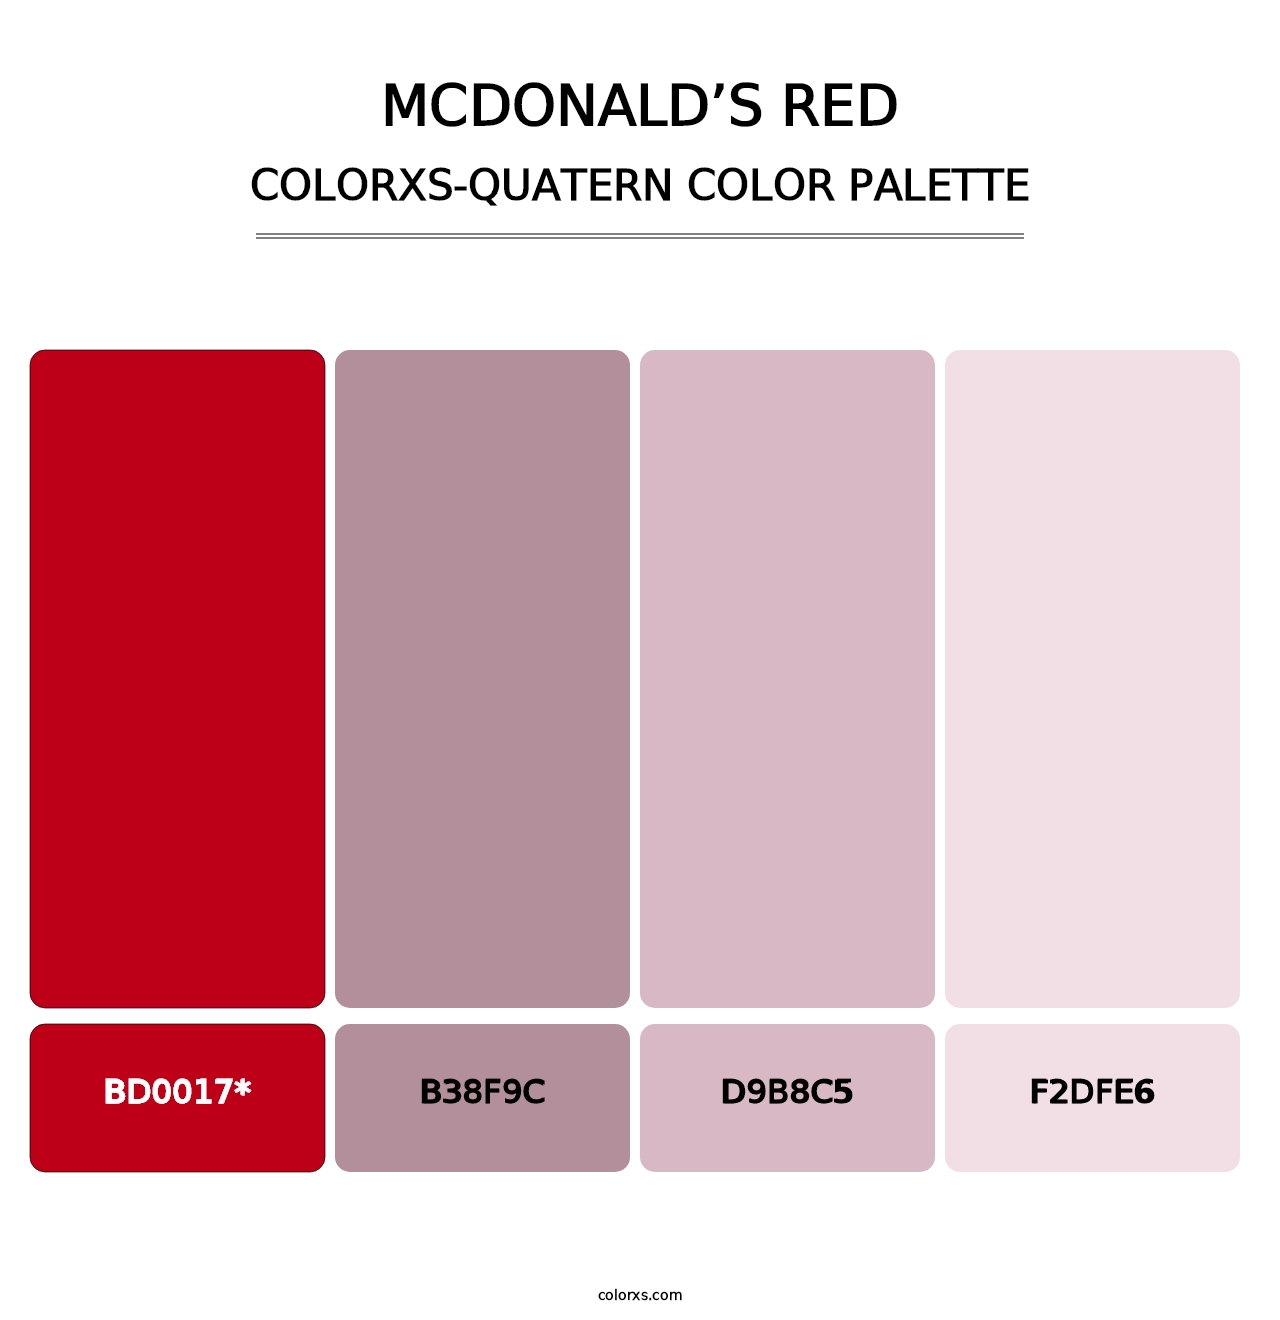 McDonald’s Red - Colorxs Quad Palette